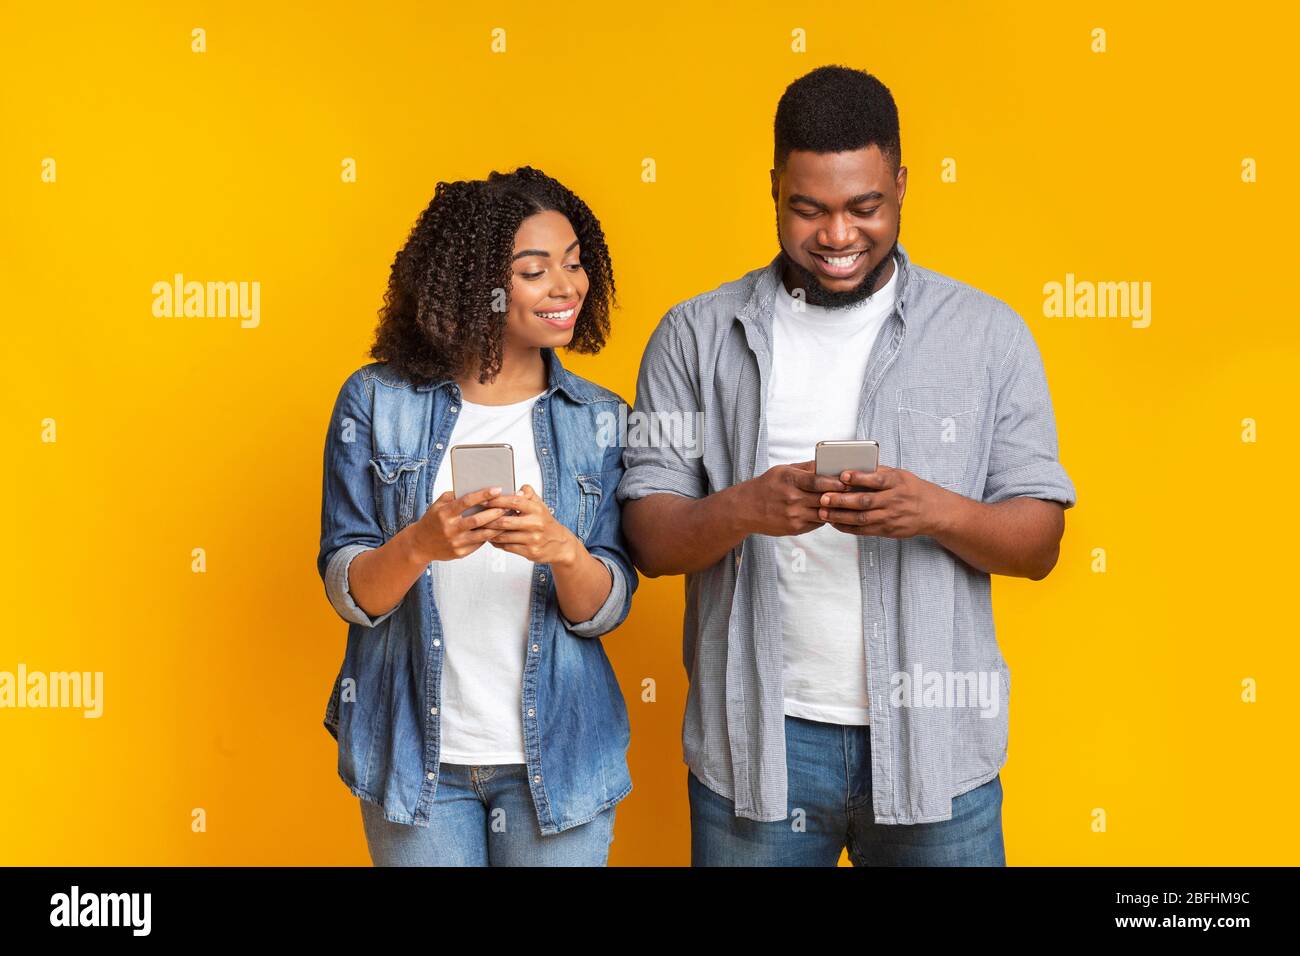 Curieuse petite amie noire qui s'épluche dans le smartphone de mon ami, essayant de lire des messages Banque D'Images